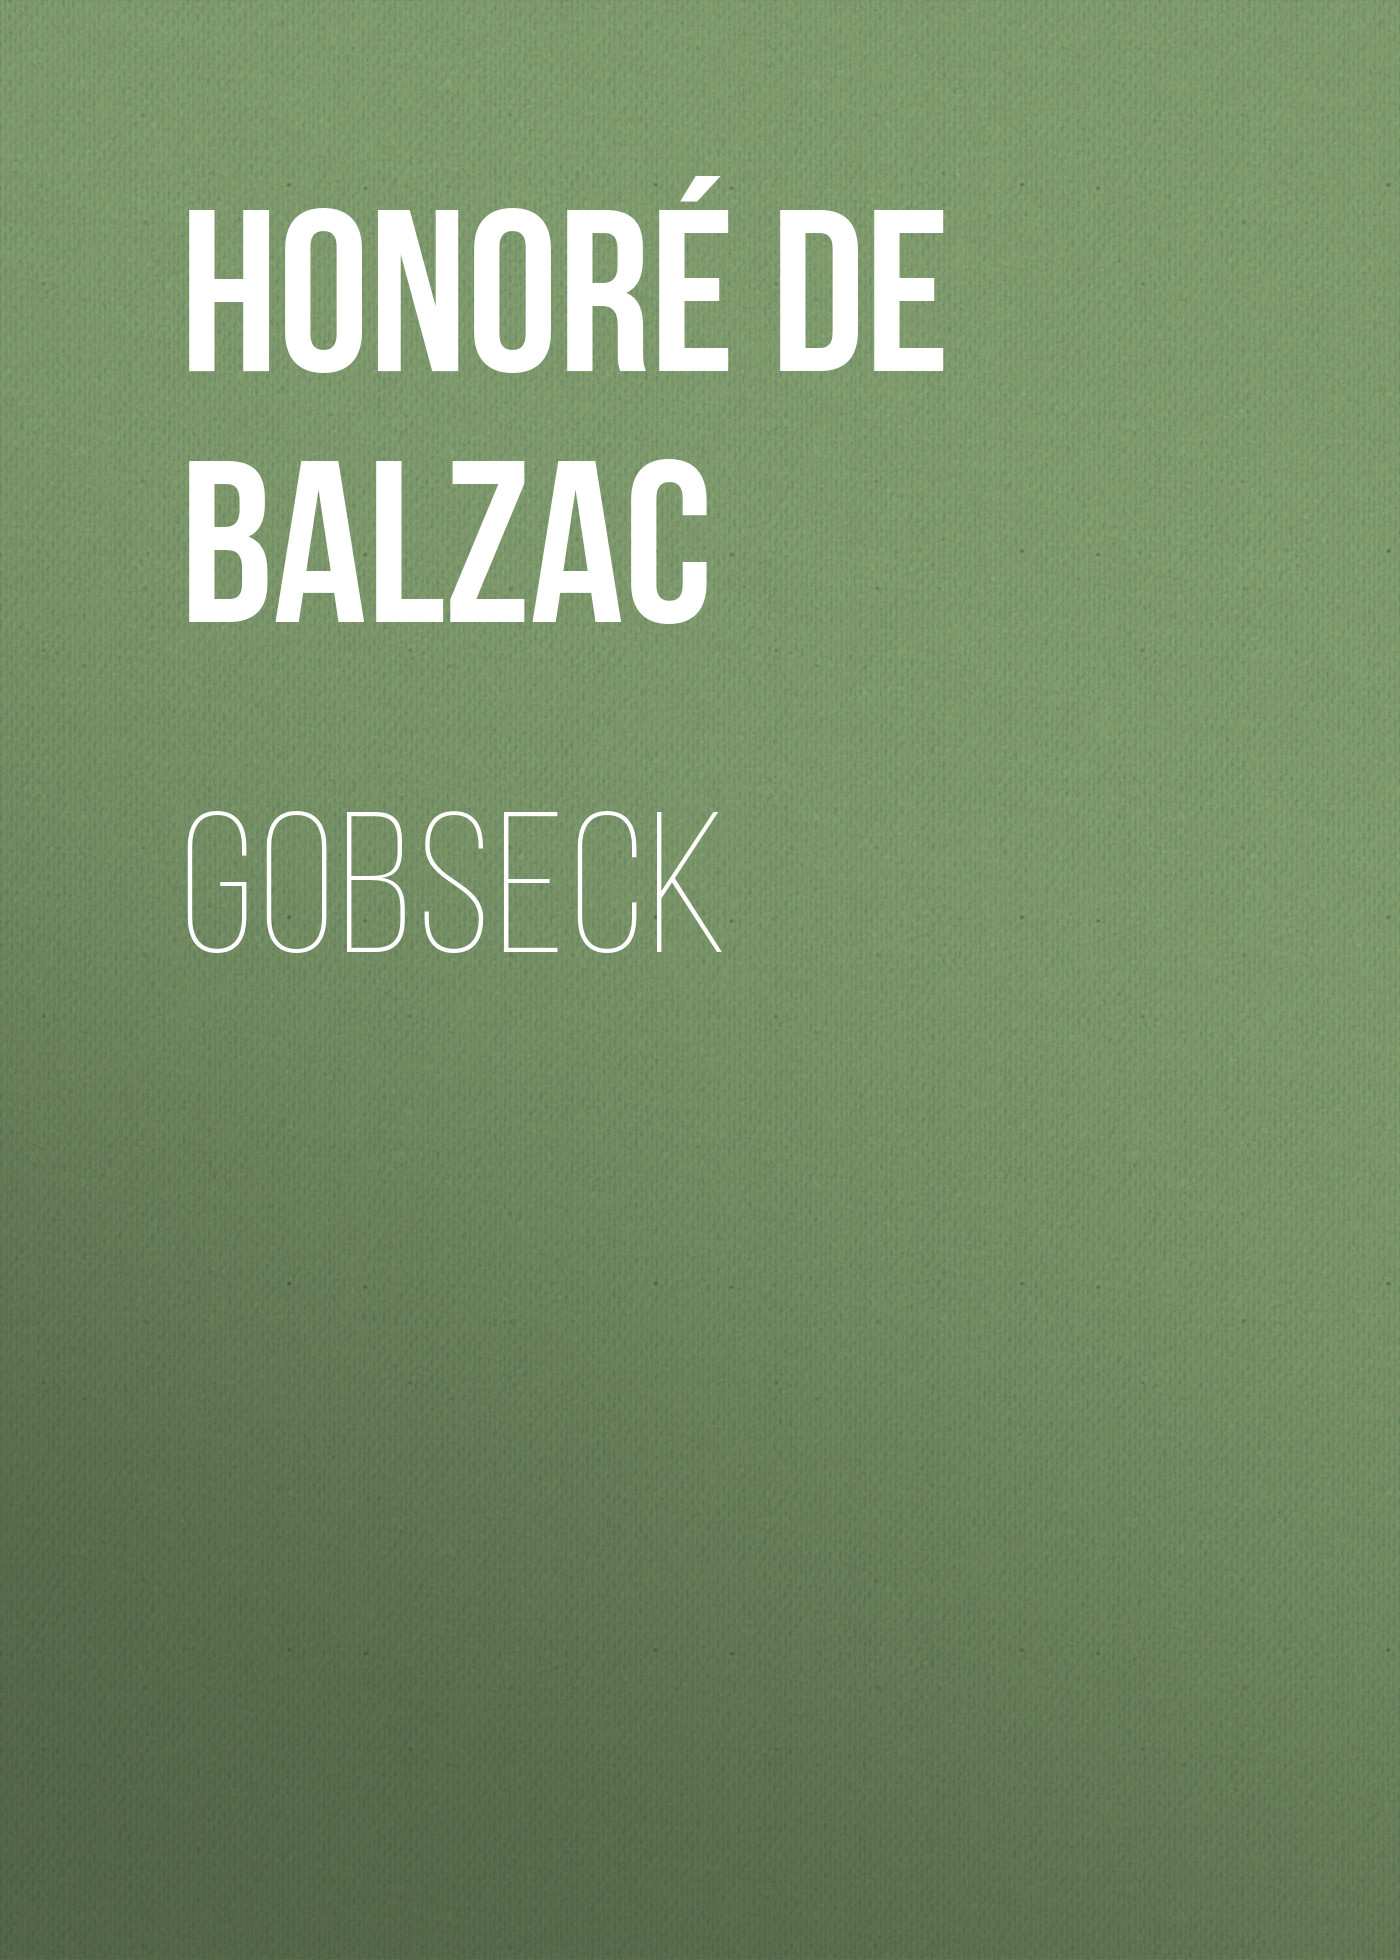 Книга Gobseck из серии , созданная Honoré Balzac, может относится к жанру Литература 19 века, Зарубежная старинная литература, Зарубежная классика. Стоимость электронной книги Gobseck с идентификатором 25020979 составляет 0 руб.